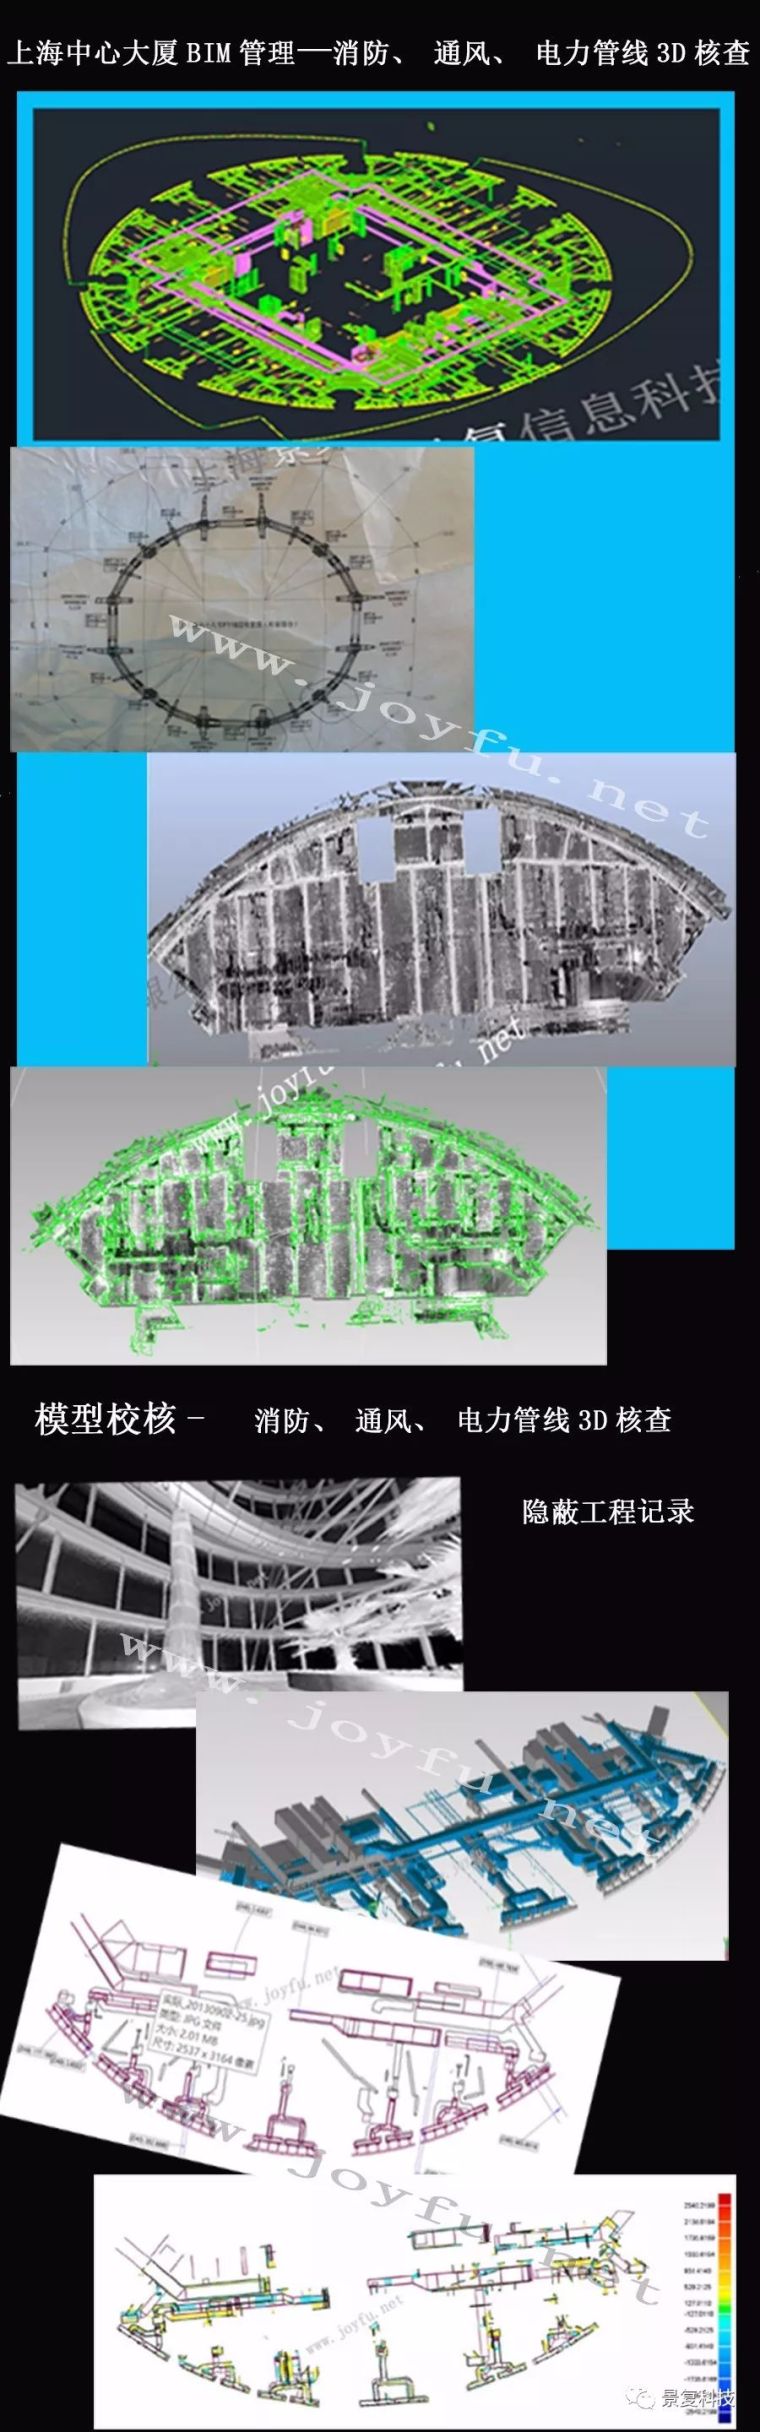 bim模型管理资料下载-案例——上海中心大厦BIM管理及模型校核